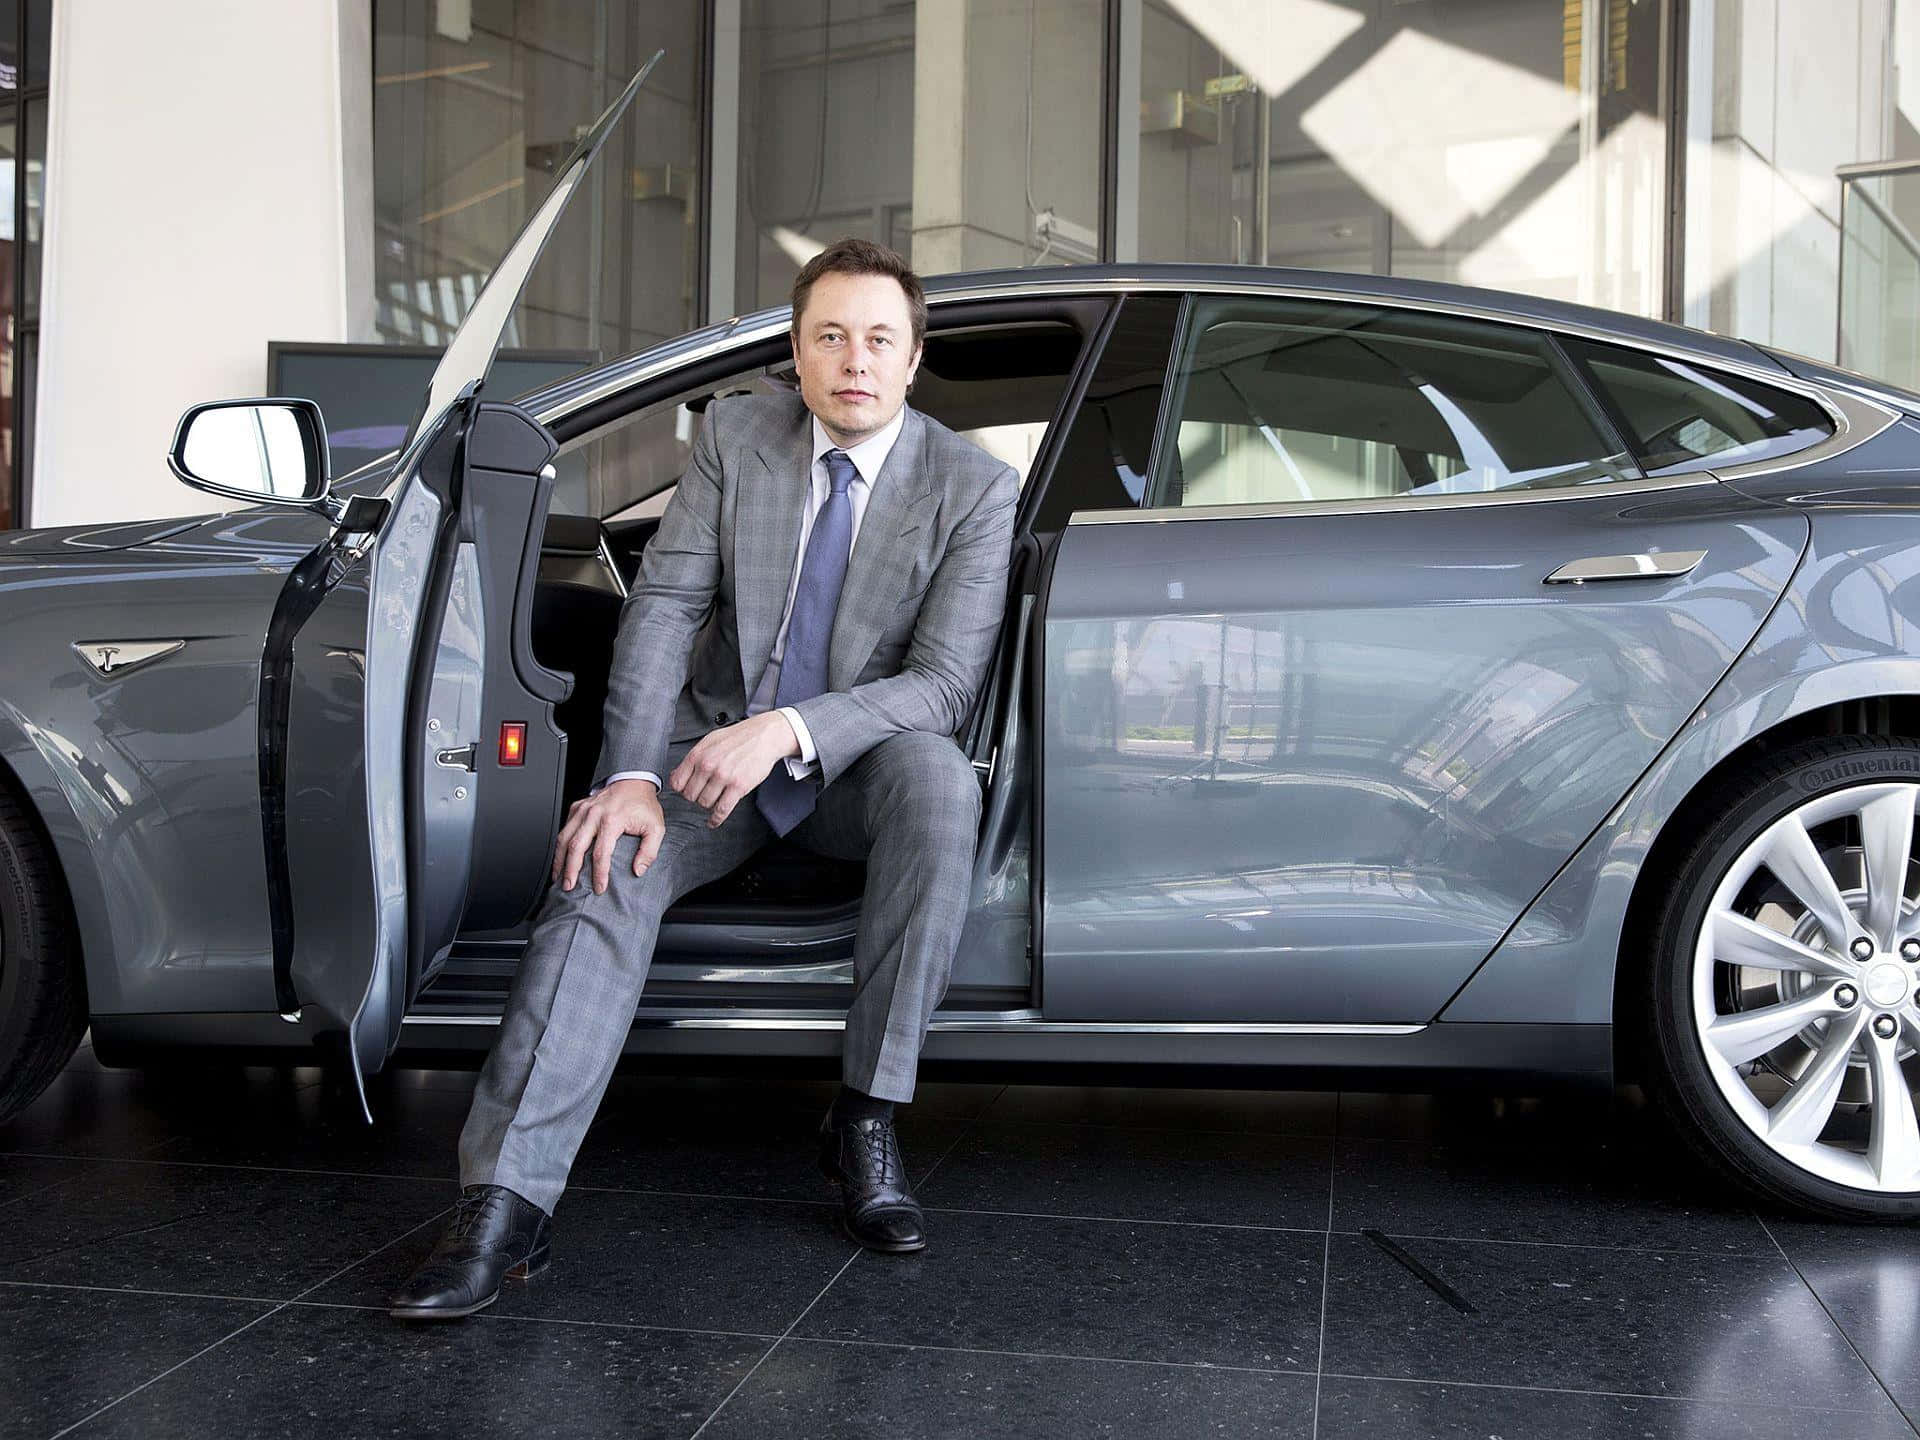 Elon Musk, entrepreneur and innovator